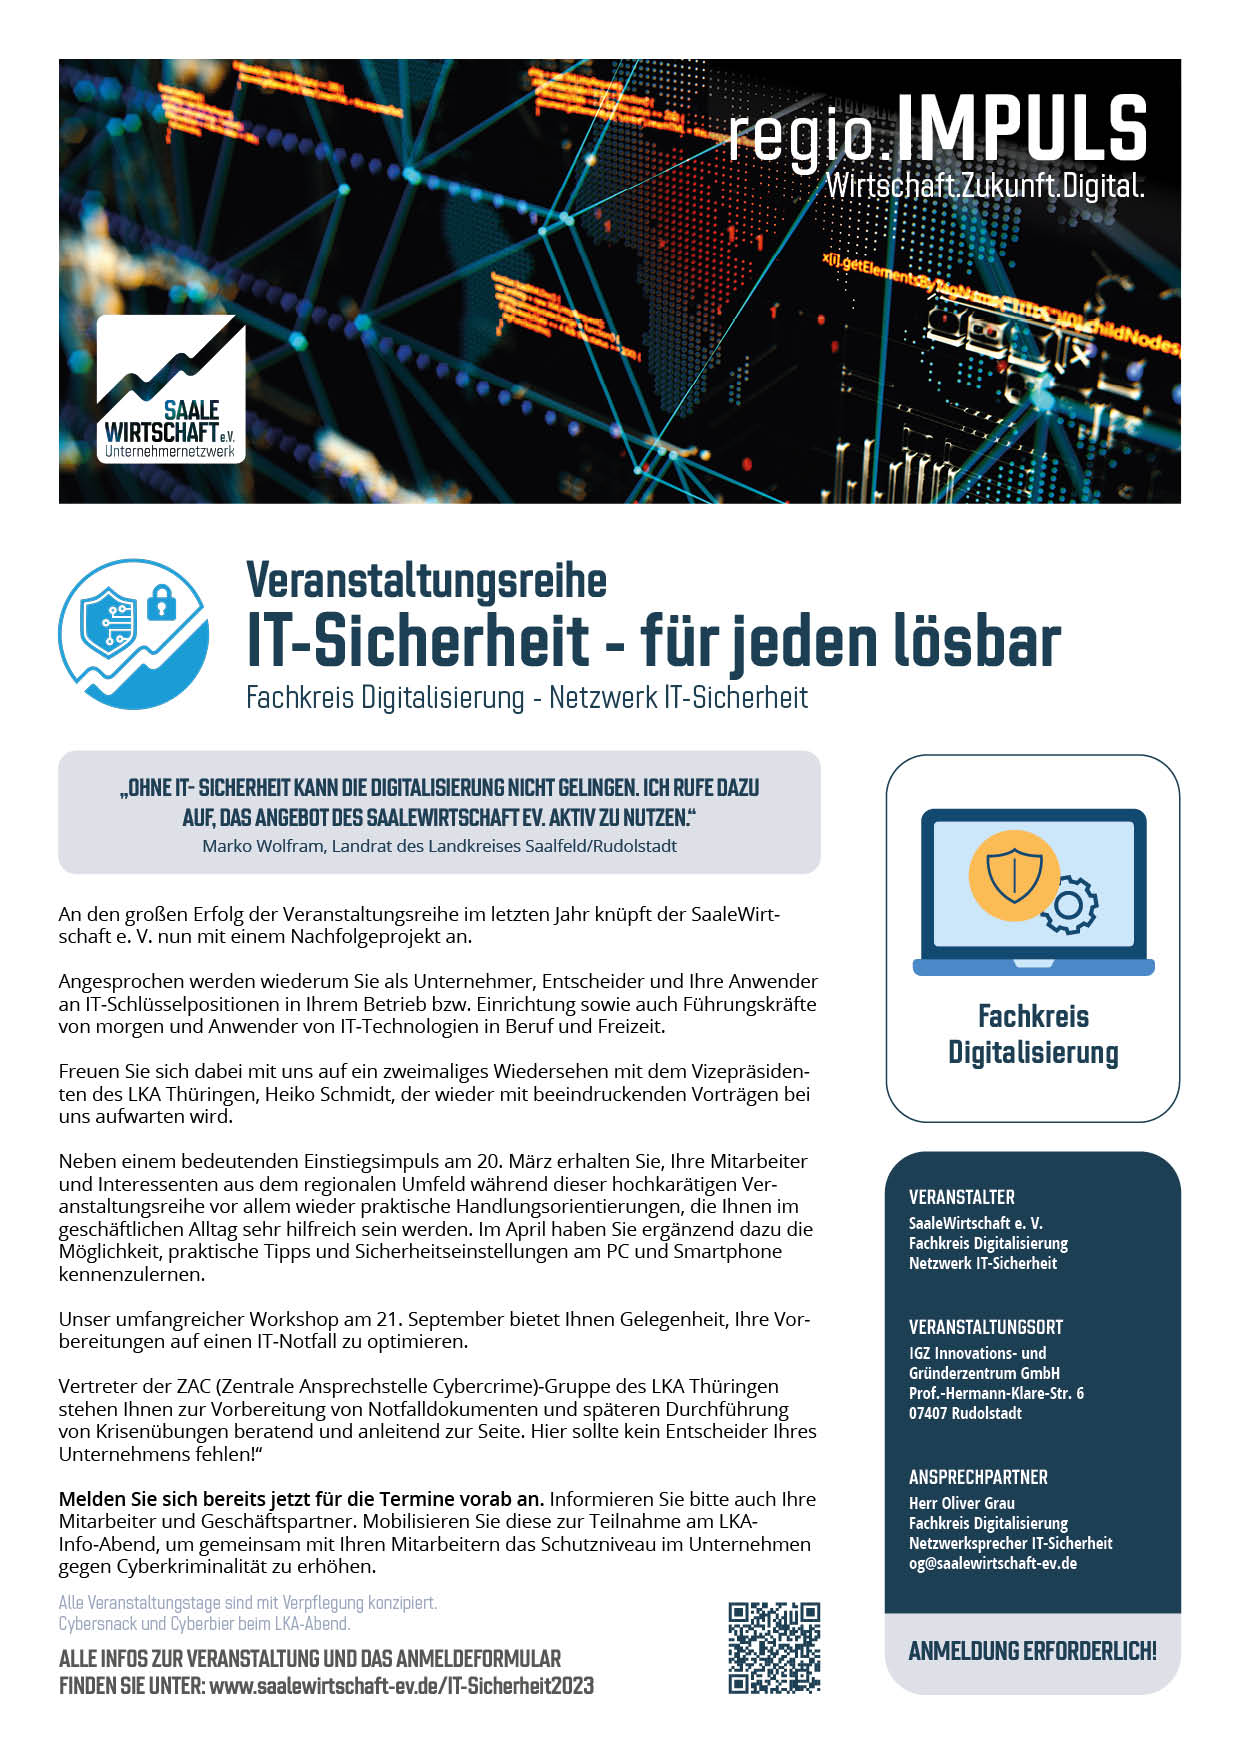 Veranstaltungsblatt IT-Sicherheit für Unternehmen und Verwaltung heute